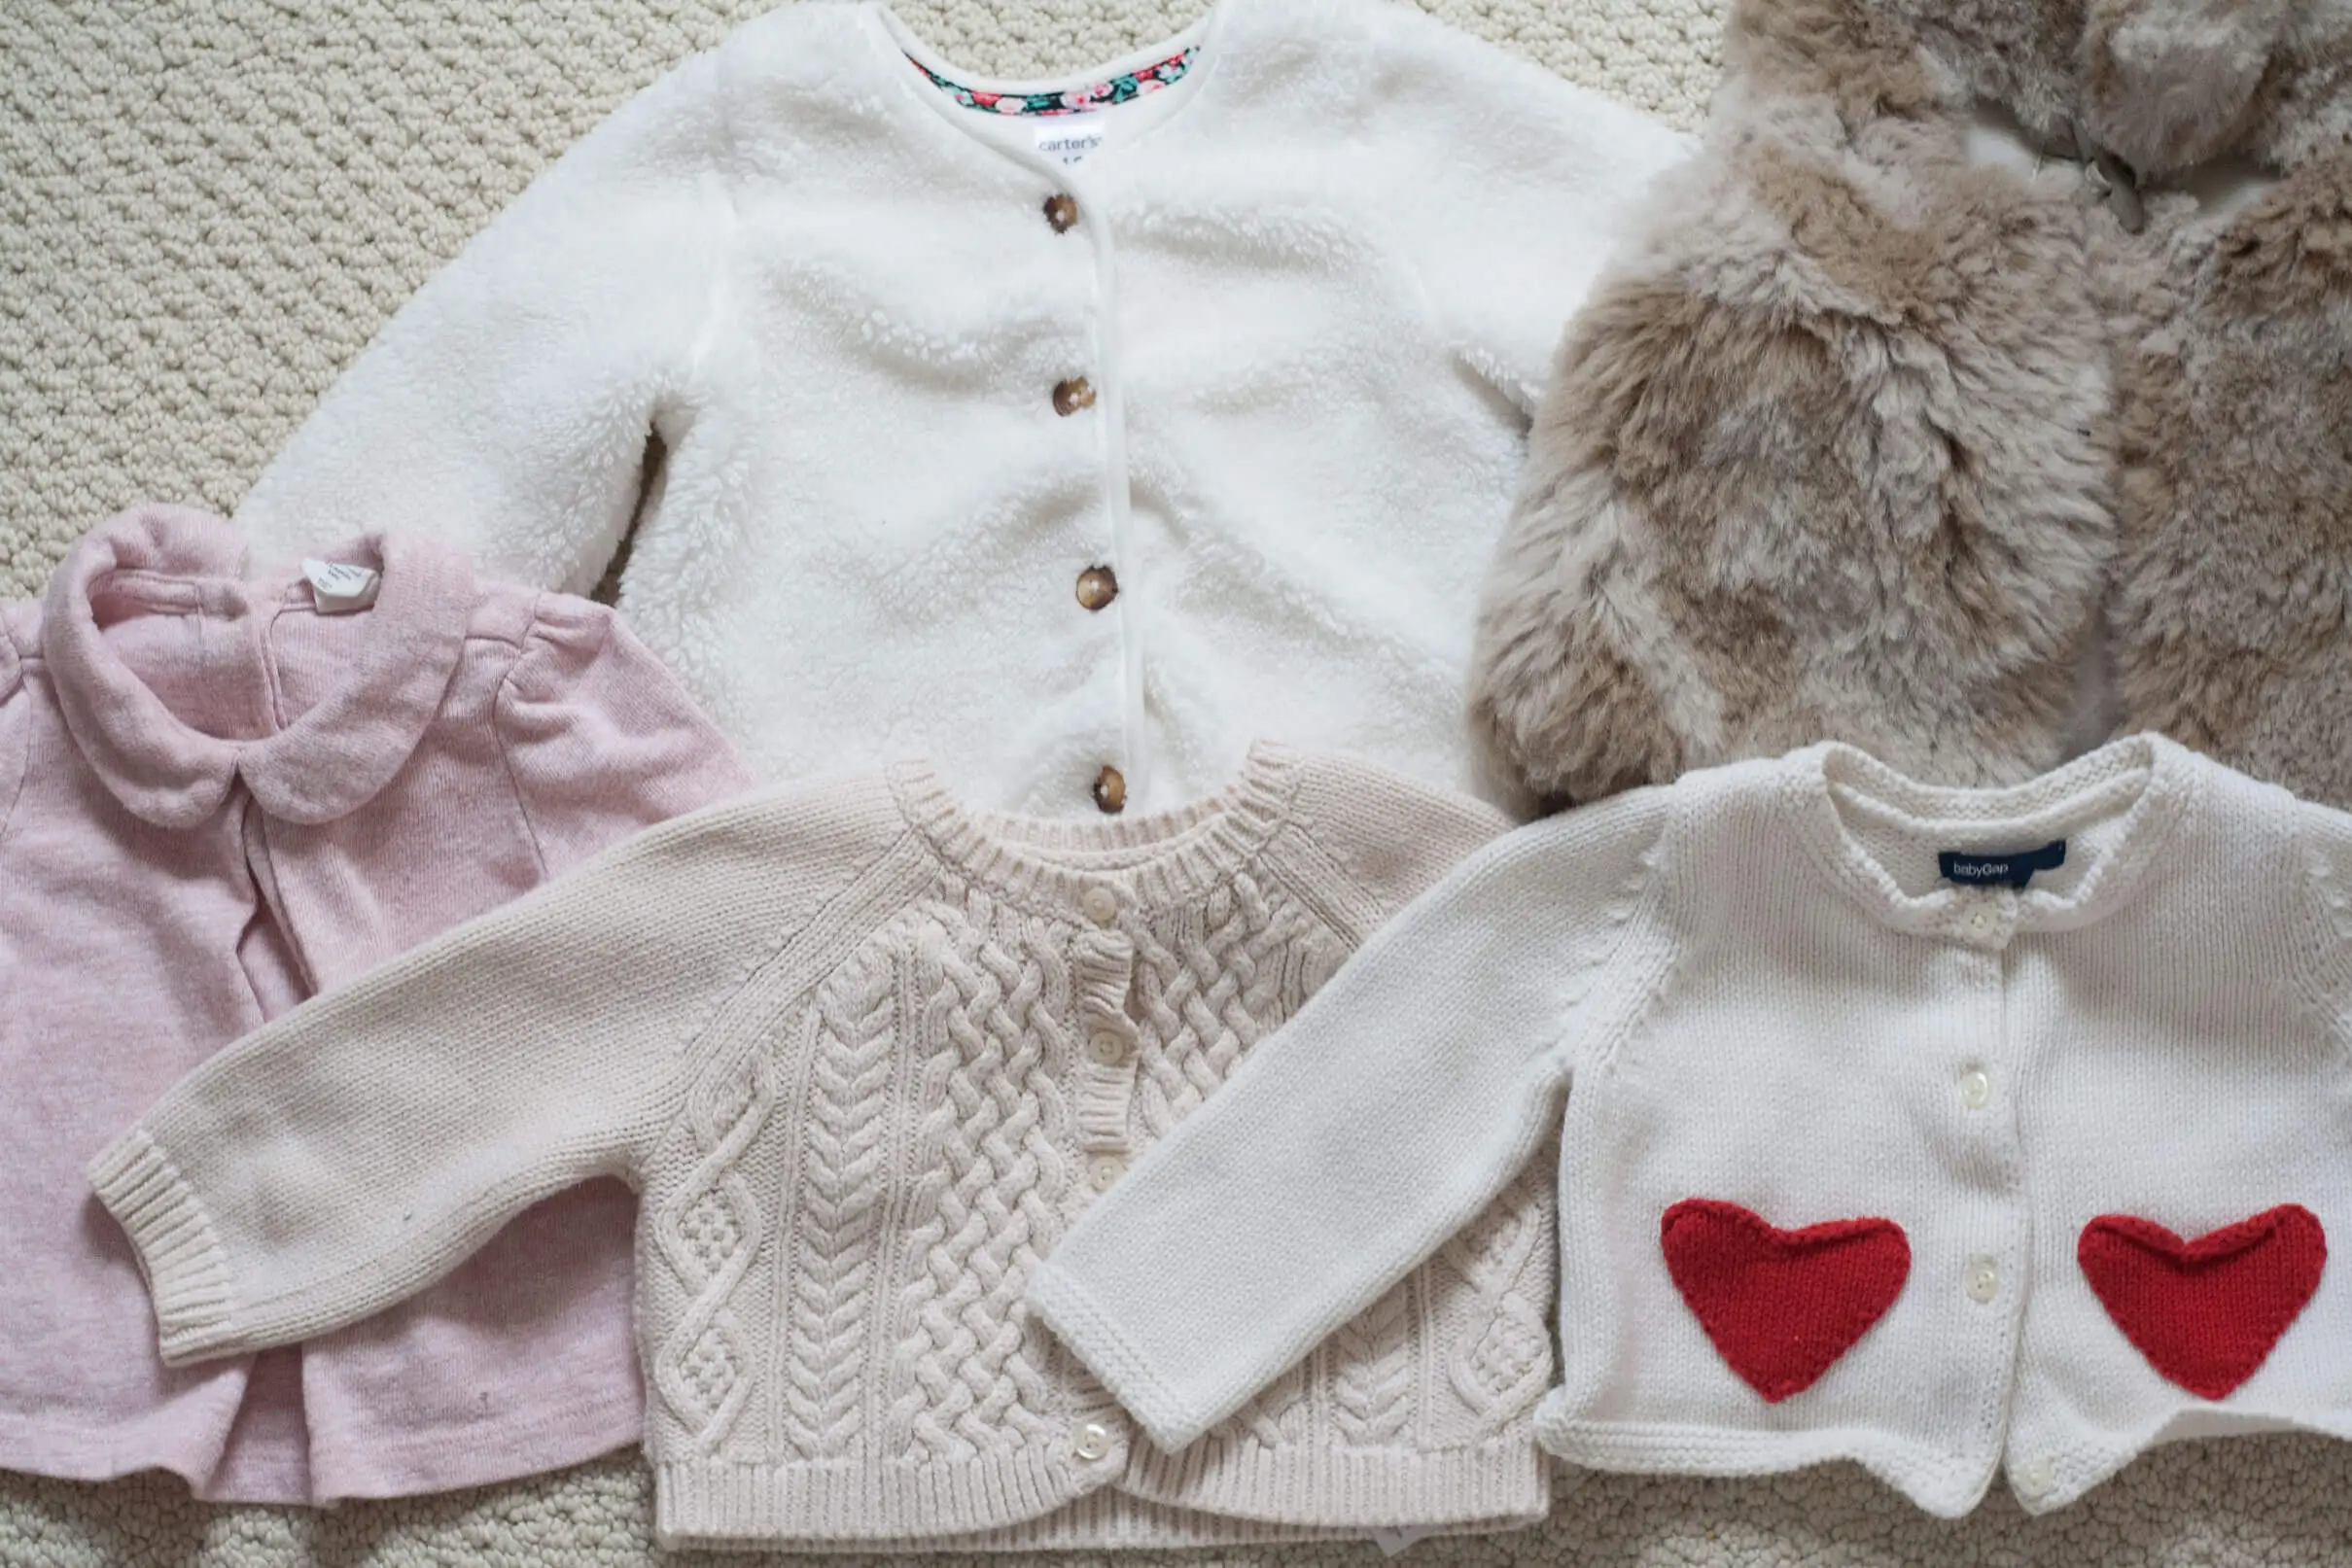 Wardrobe Essentials For Baby Girls